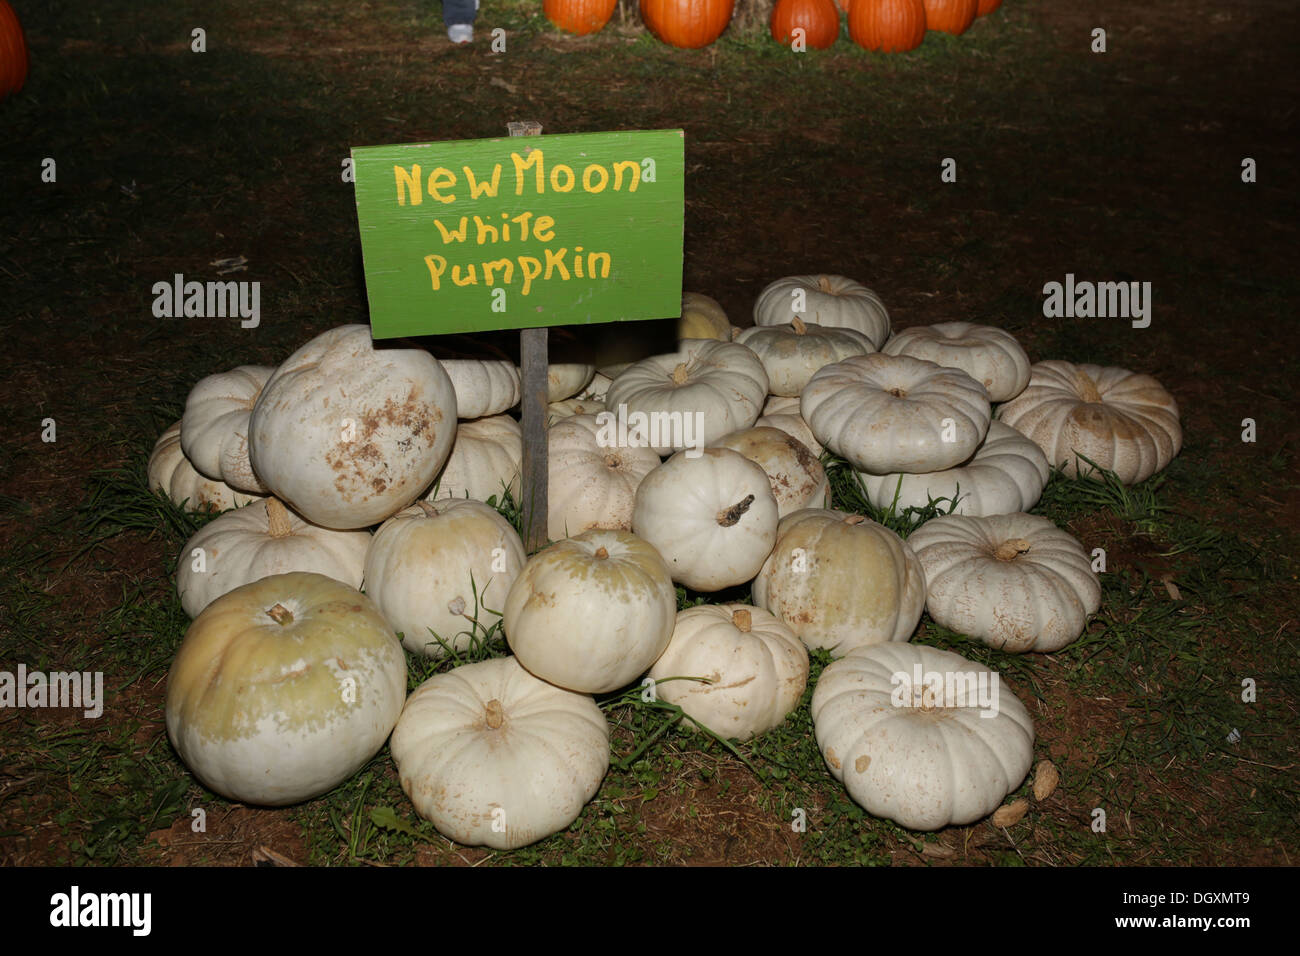 New Moon White Pumpkin Farm Autumn Fall Pumpkins Stock Photo